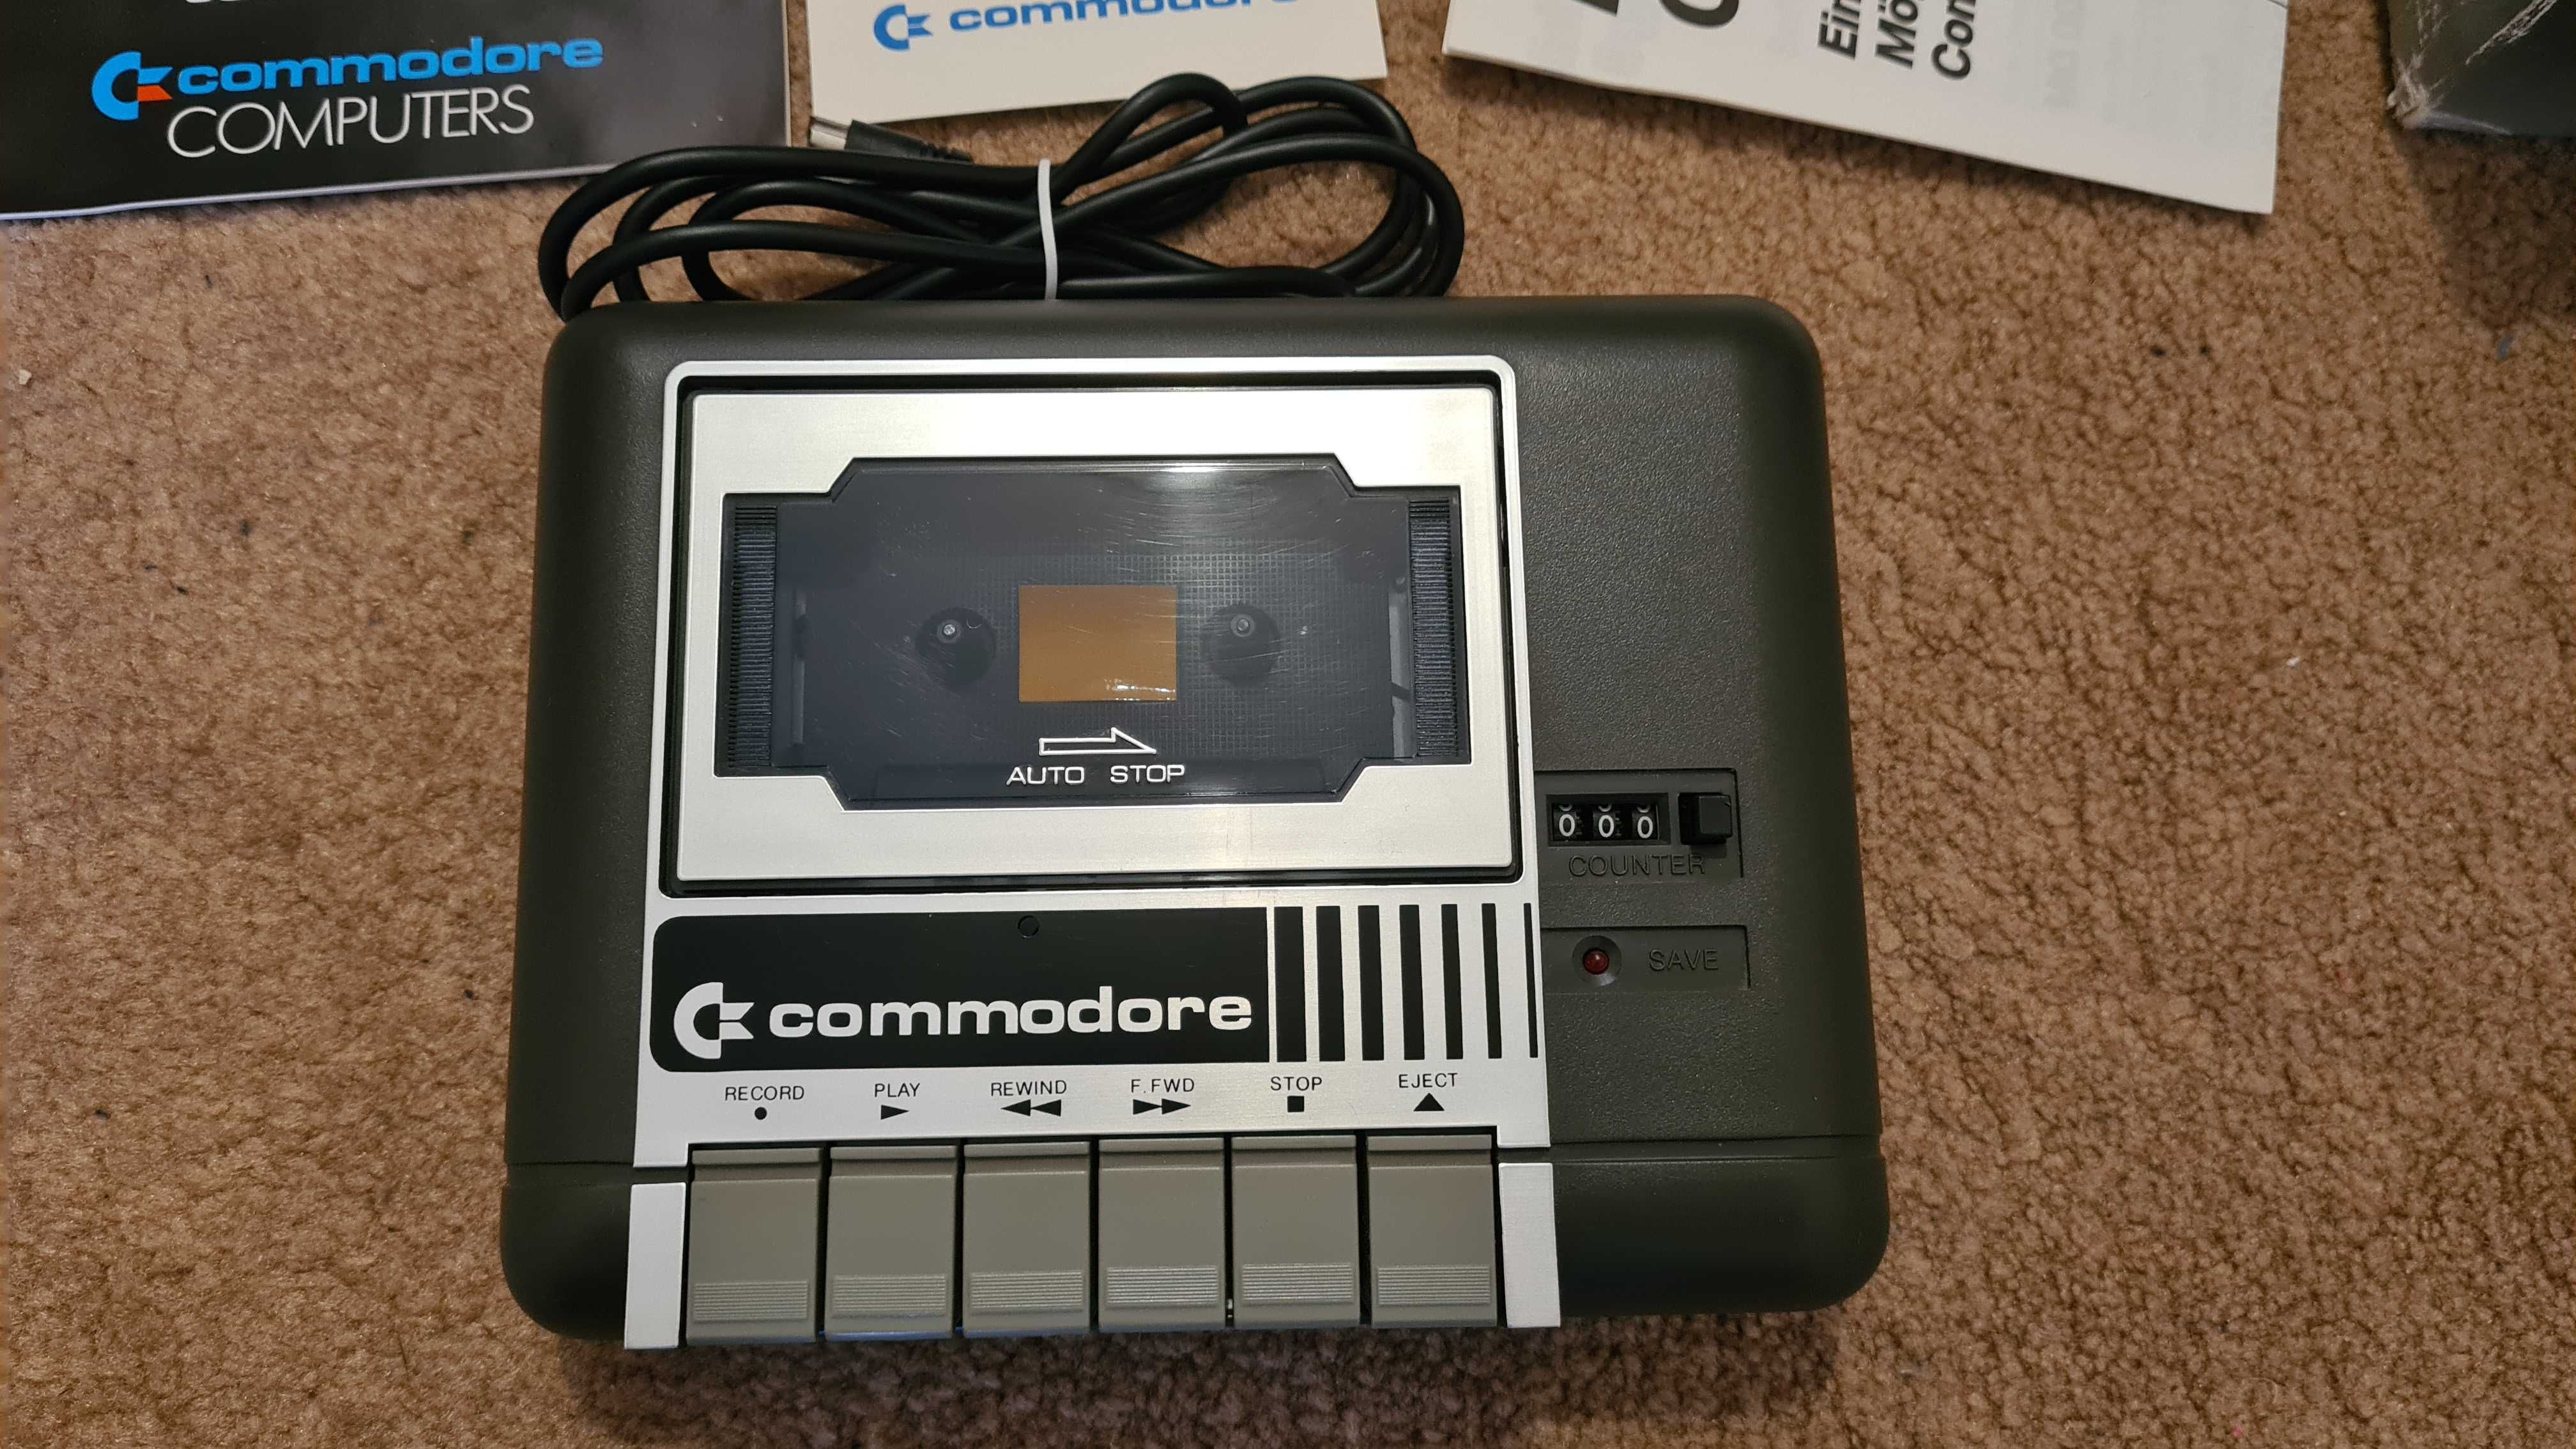 Commodore datassette 1531